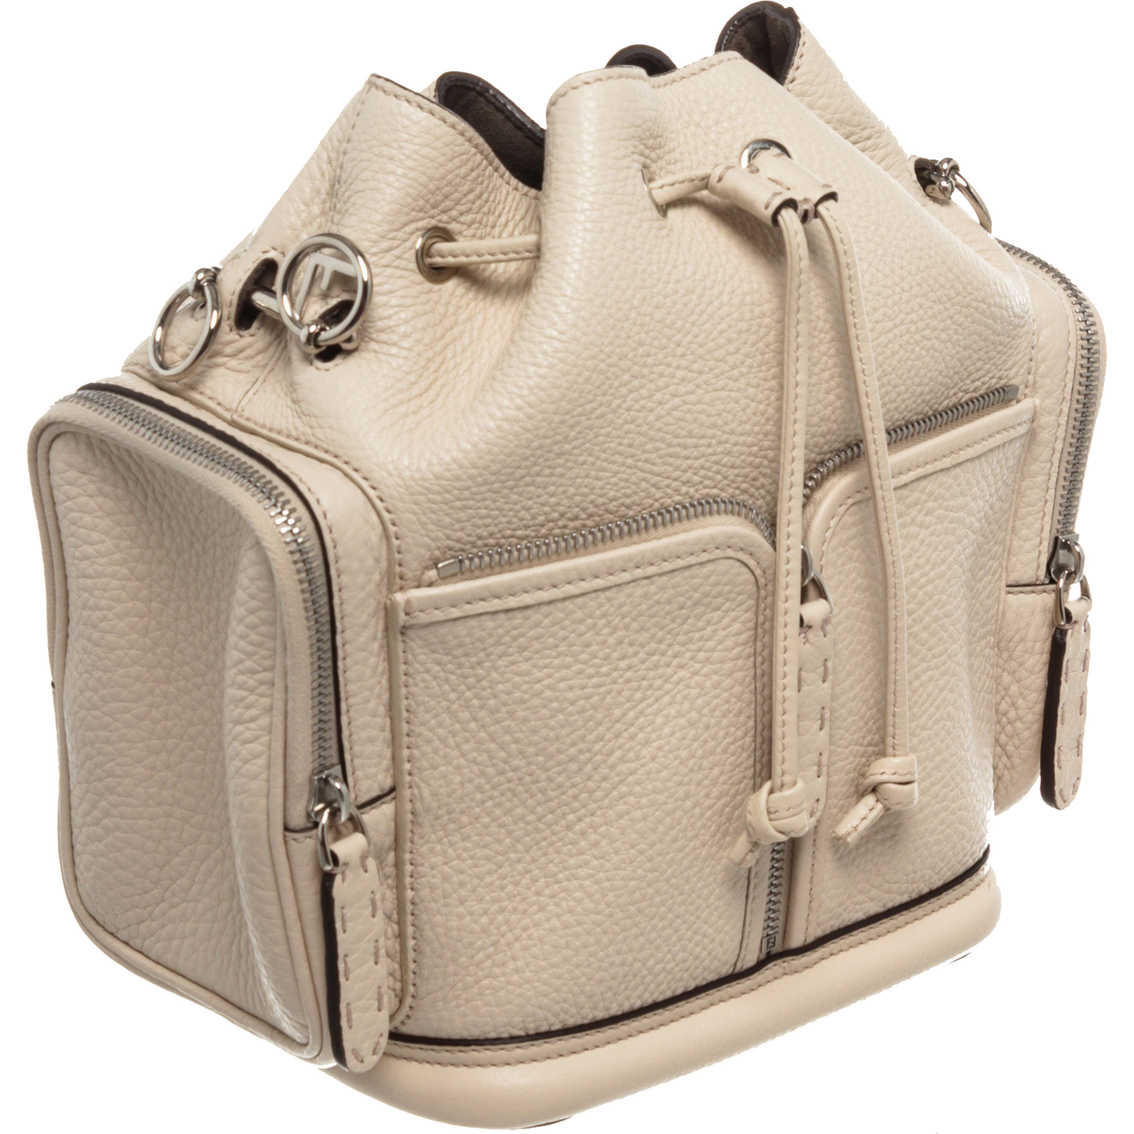 Fendi Selleria Mon Tresor Crossbody Bag (Pre-Owned) - Image 2 of 9